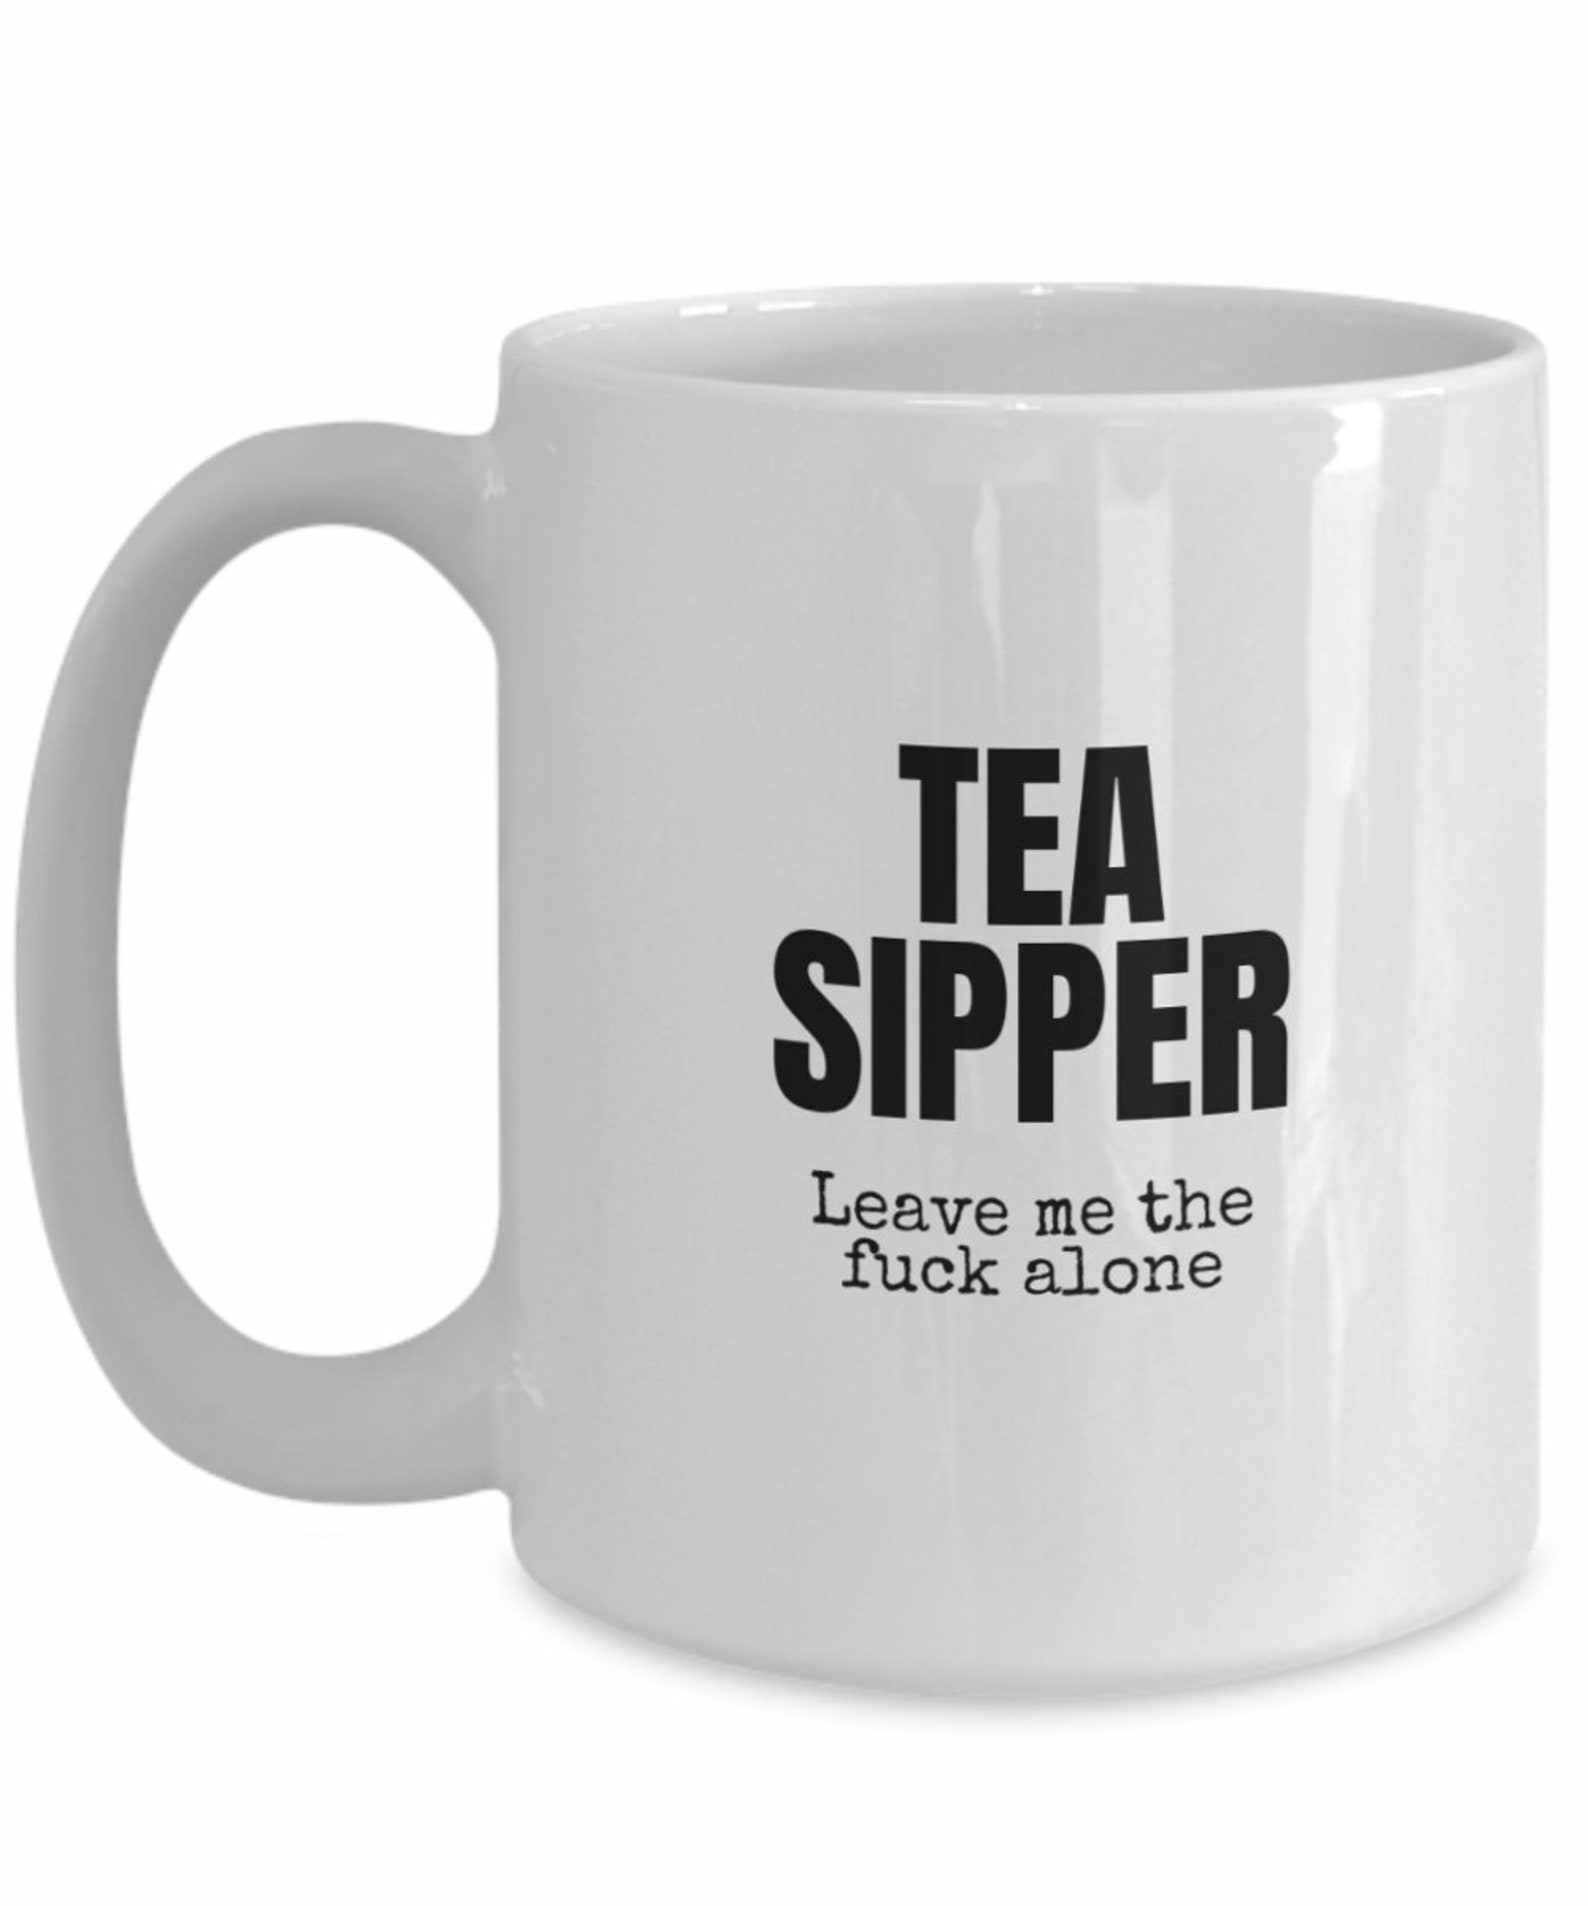 Rude Tea Mug Vulgar Tea Cup Funny Tea Cup Mugs With | Etsy